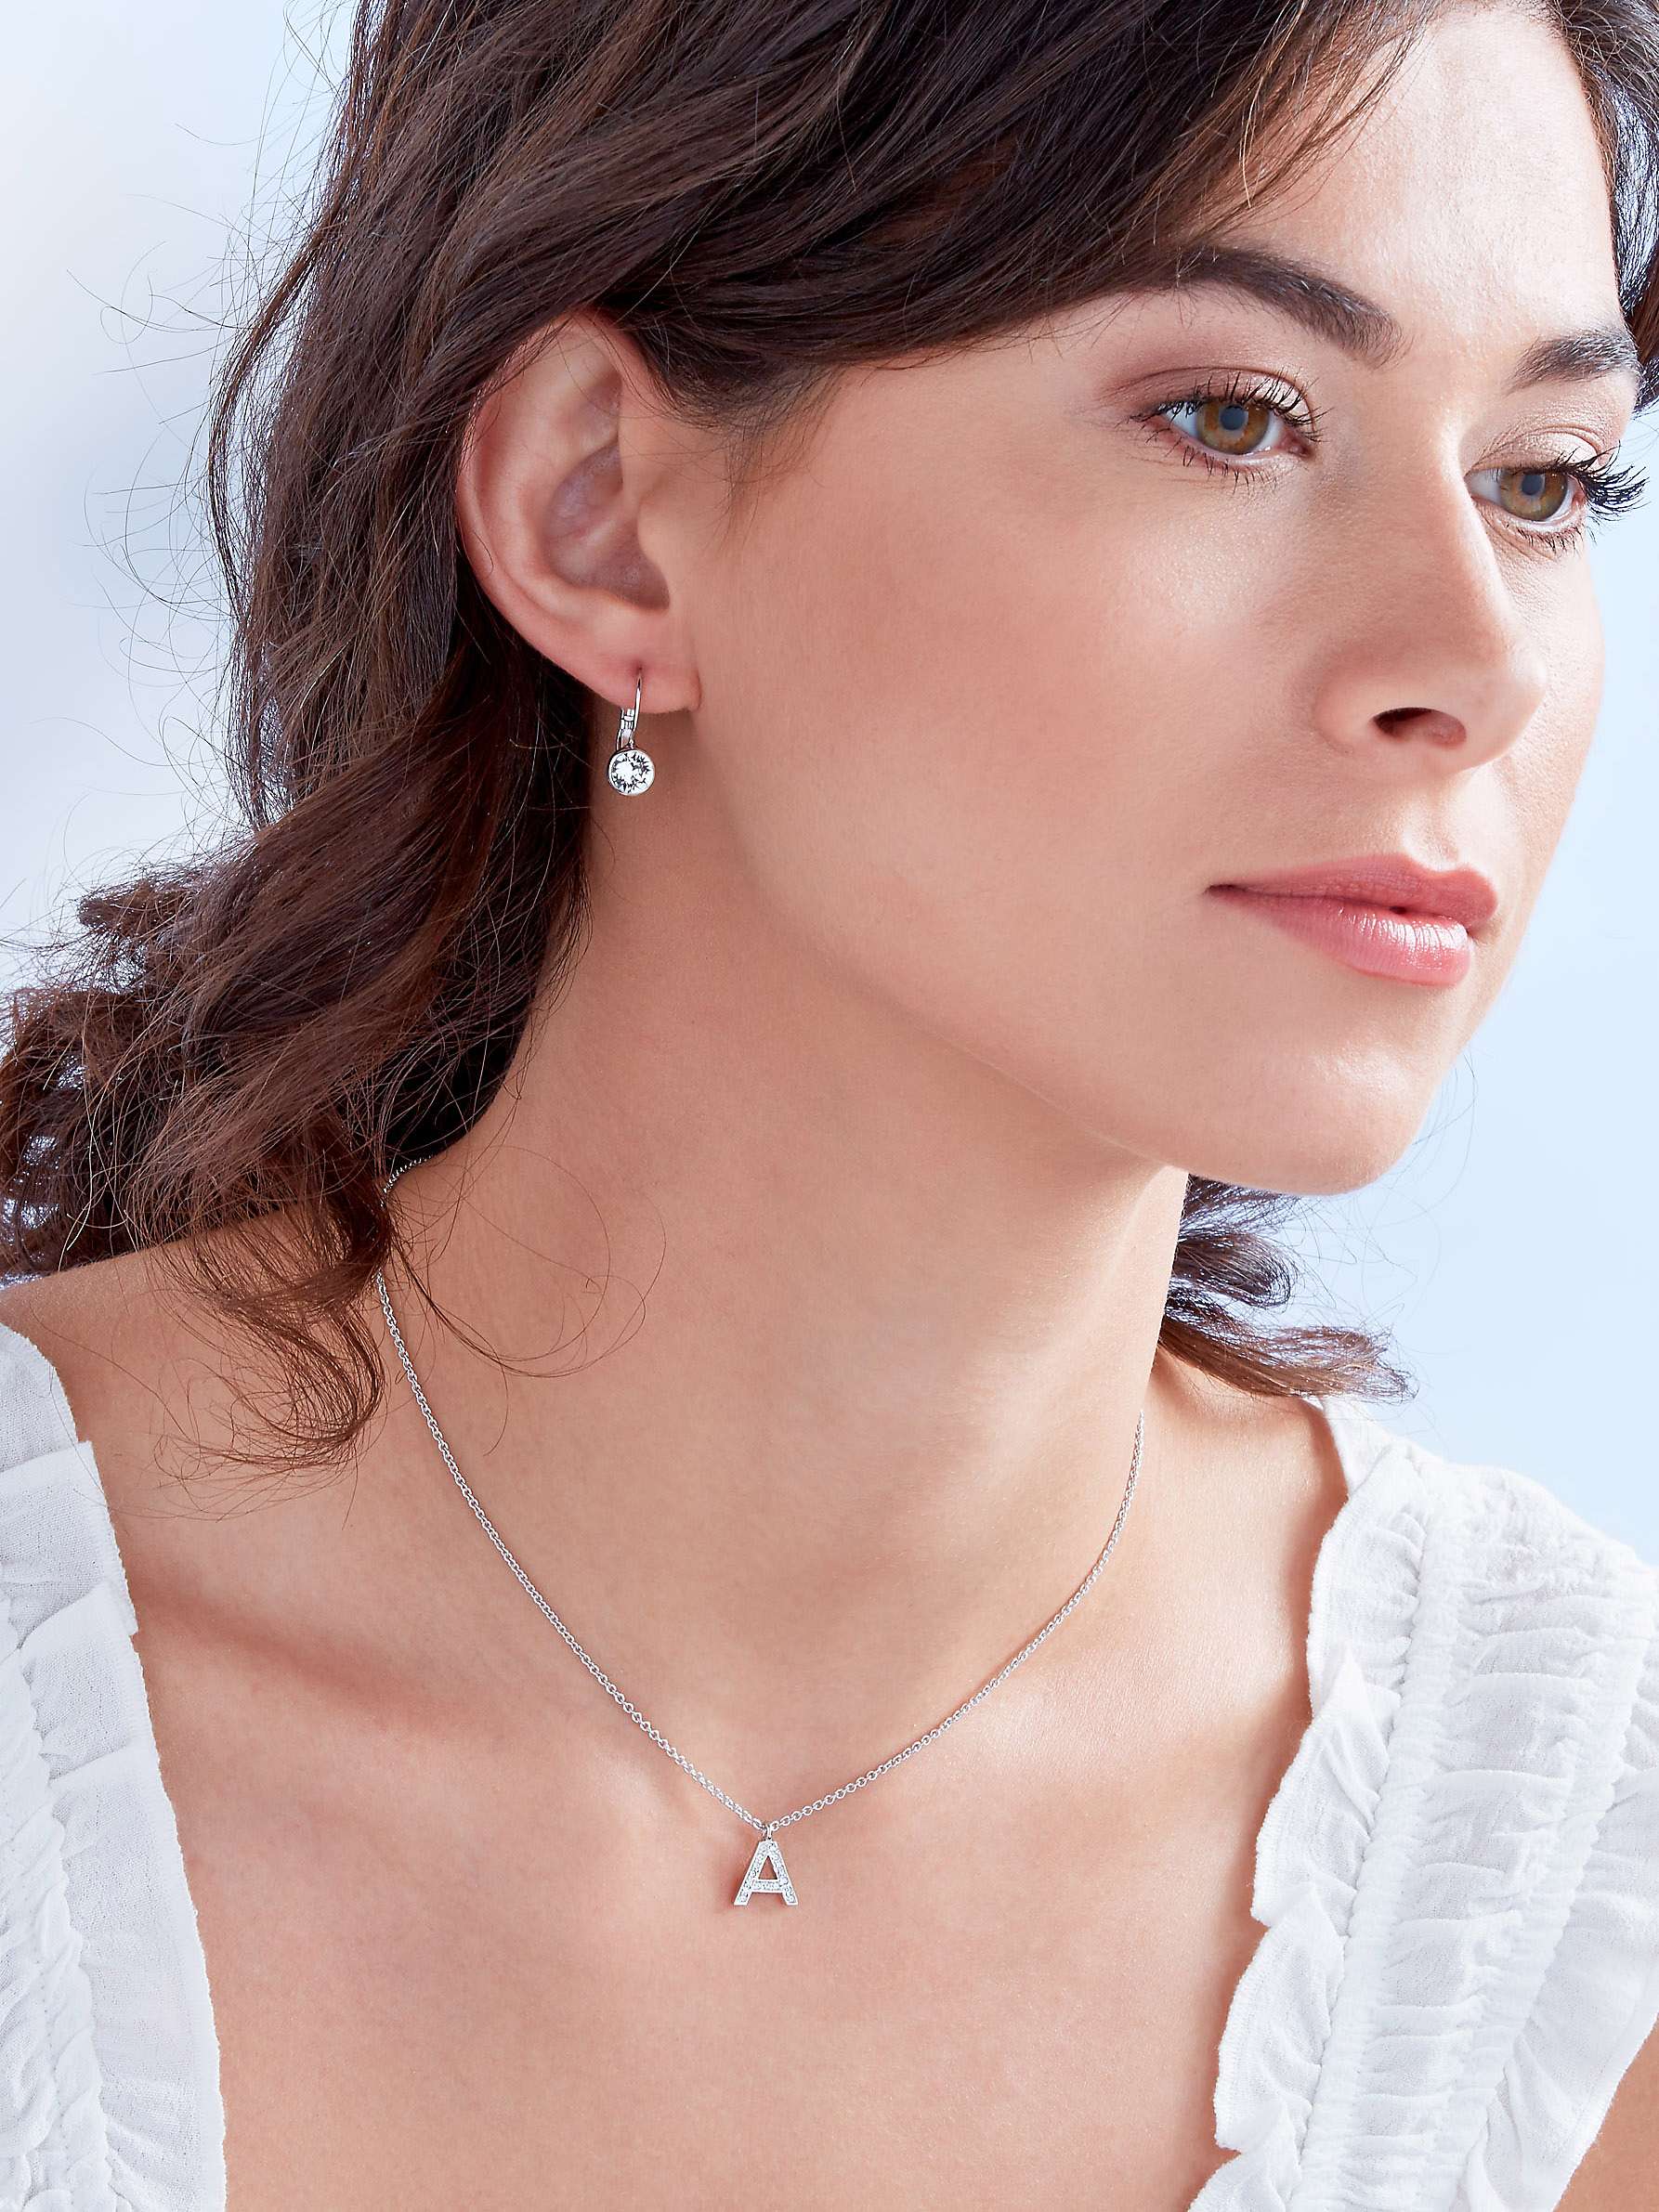 Buy Melissa Odabash Swarovski Crystal Initial Pendant Necklace, Silver Online at johnlewis.com